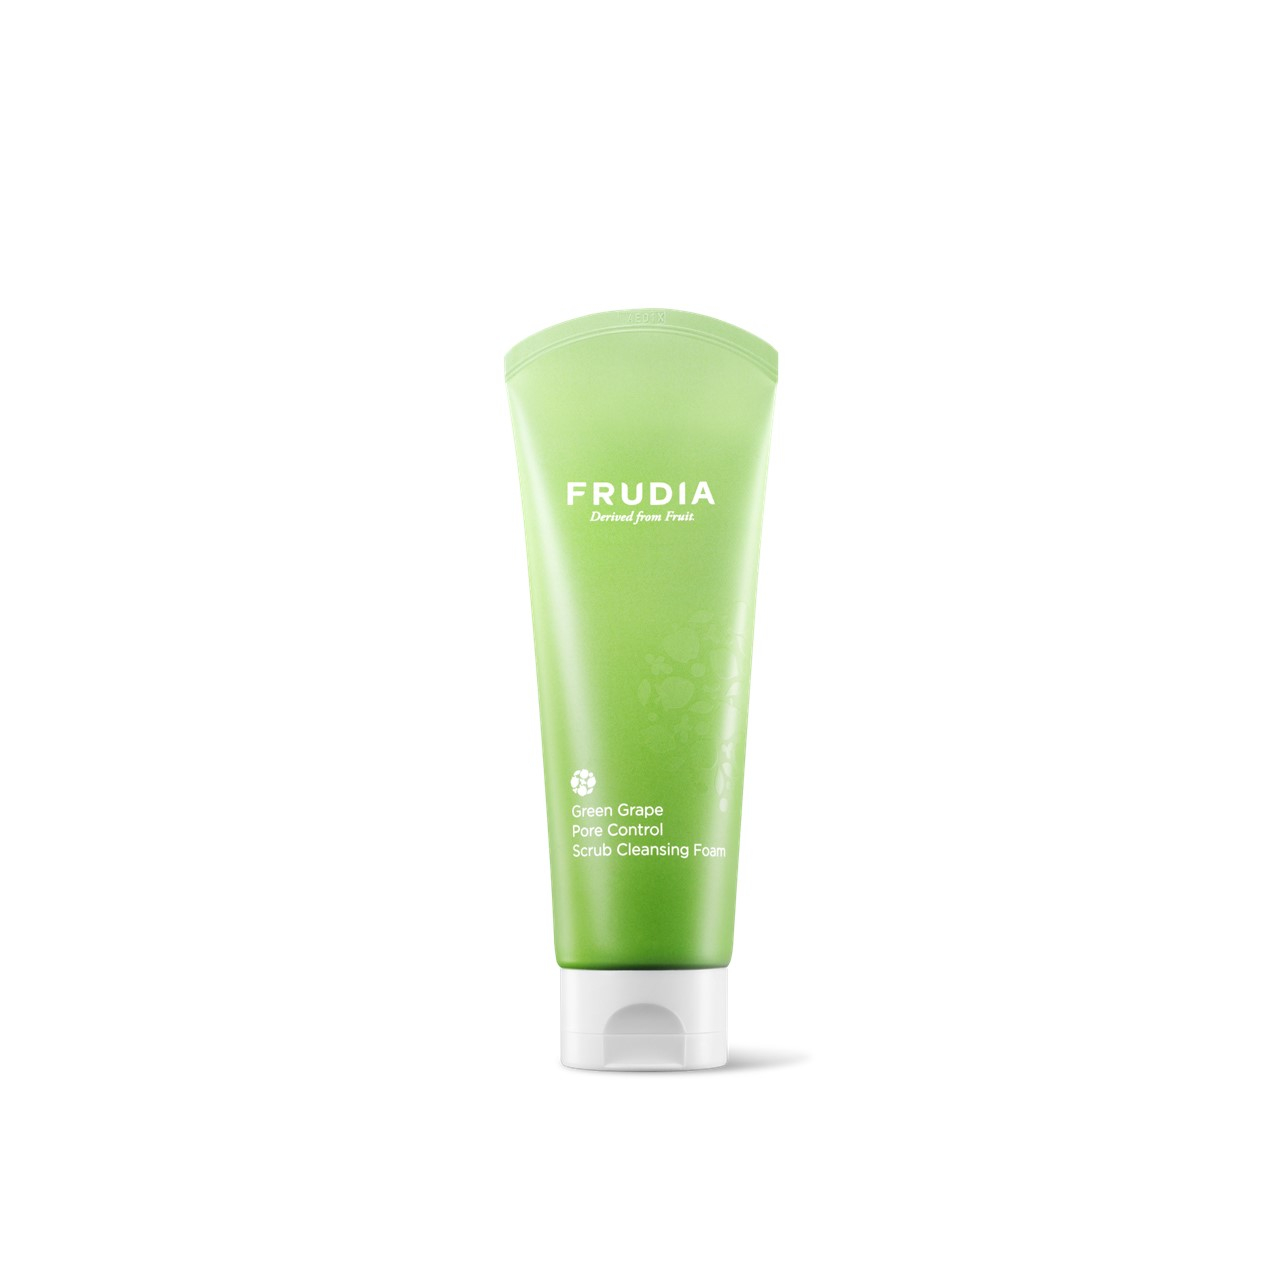 Frudia Green Grape Pore Control Scrub Cleansing Foam 145ml (4.9floz)